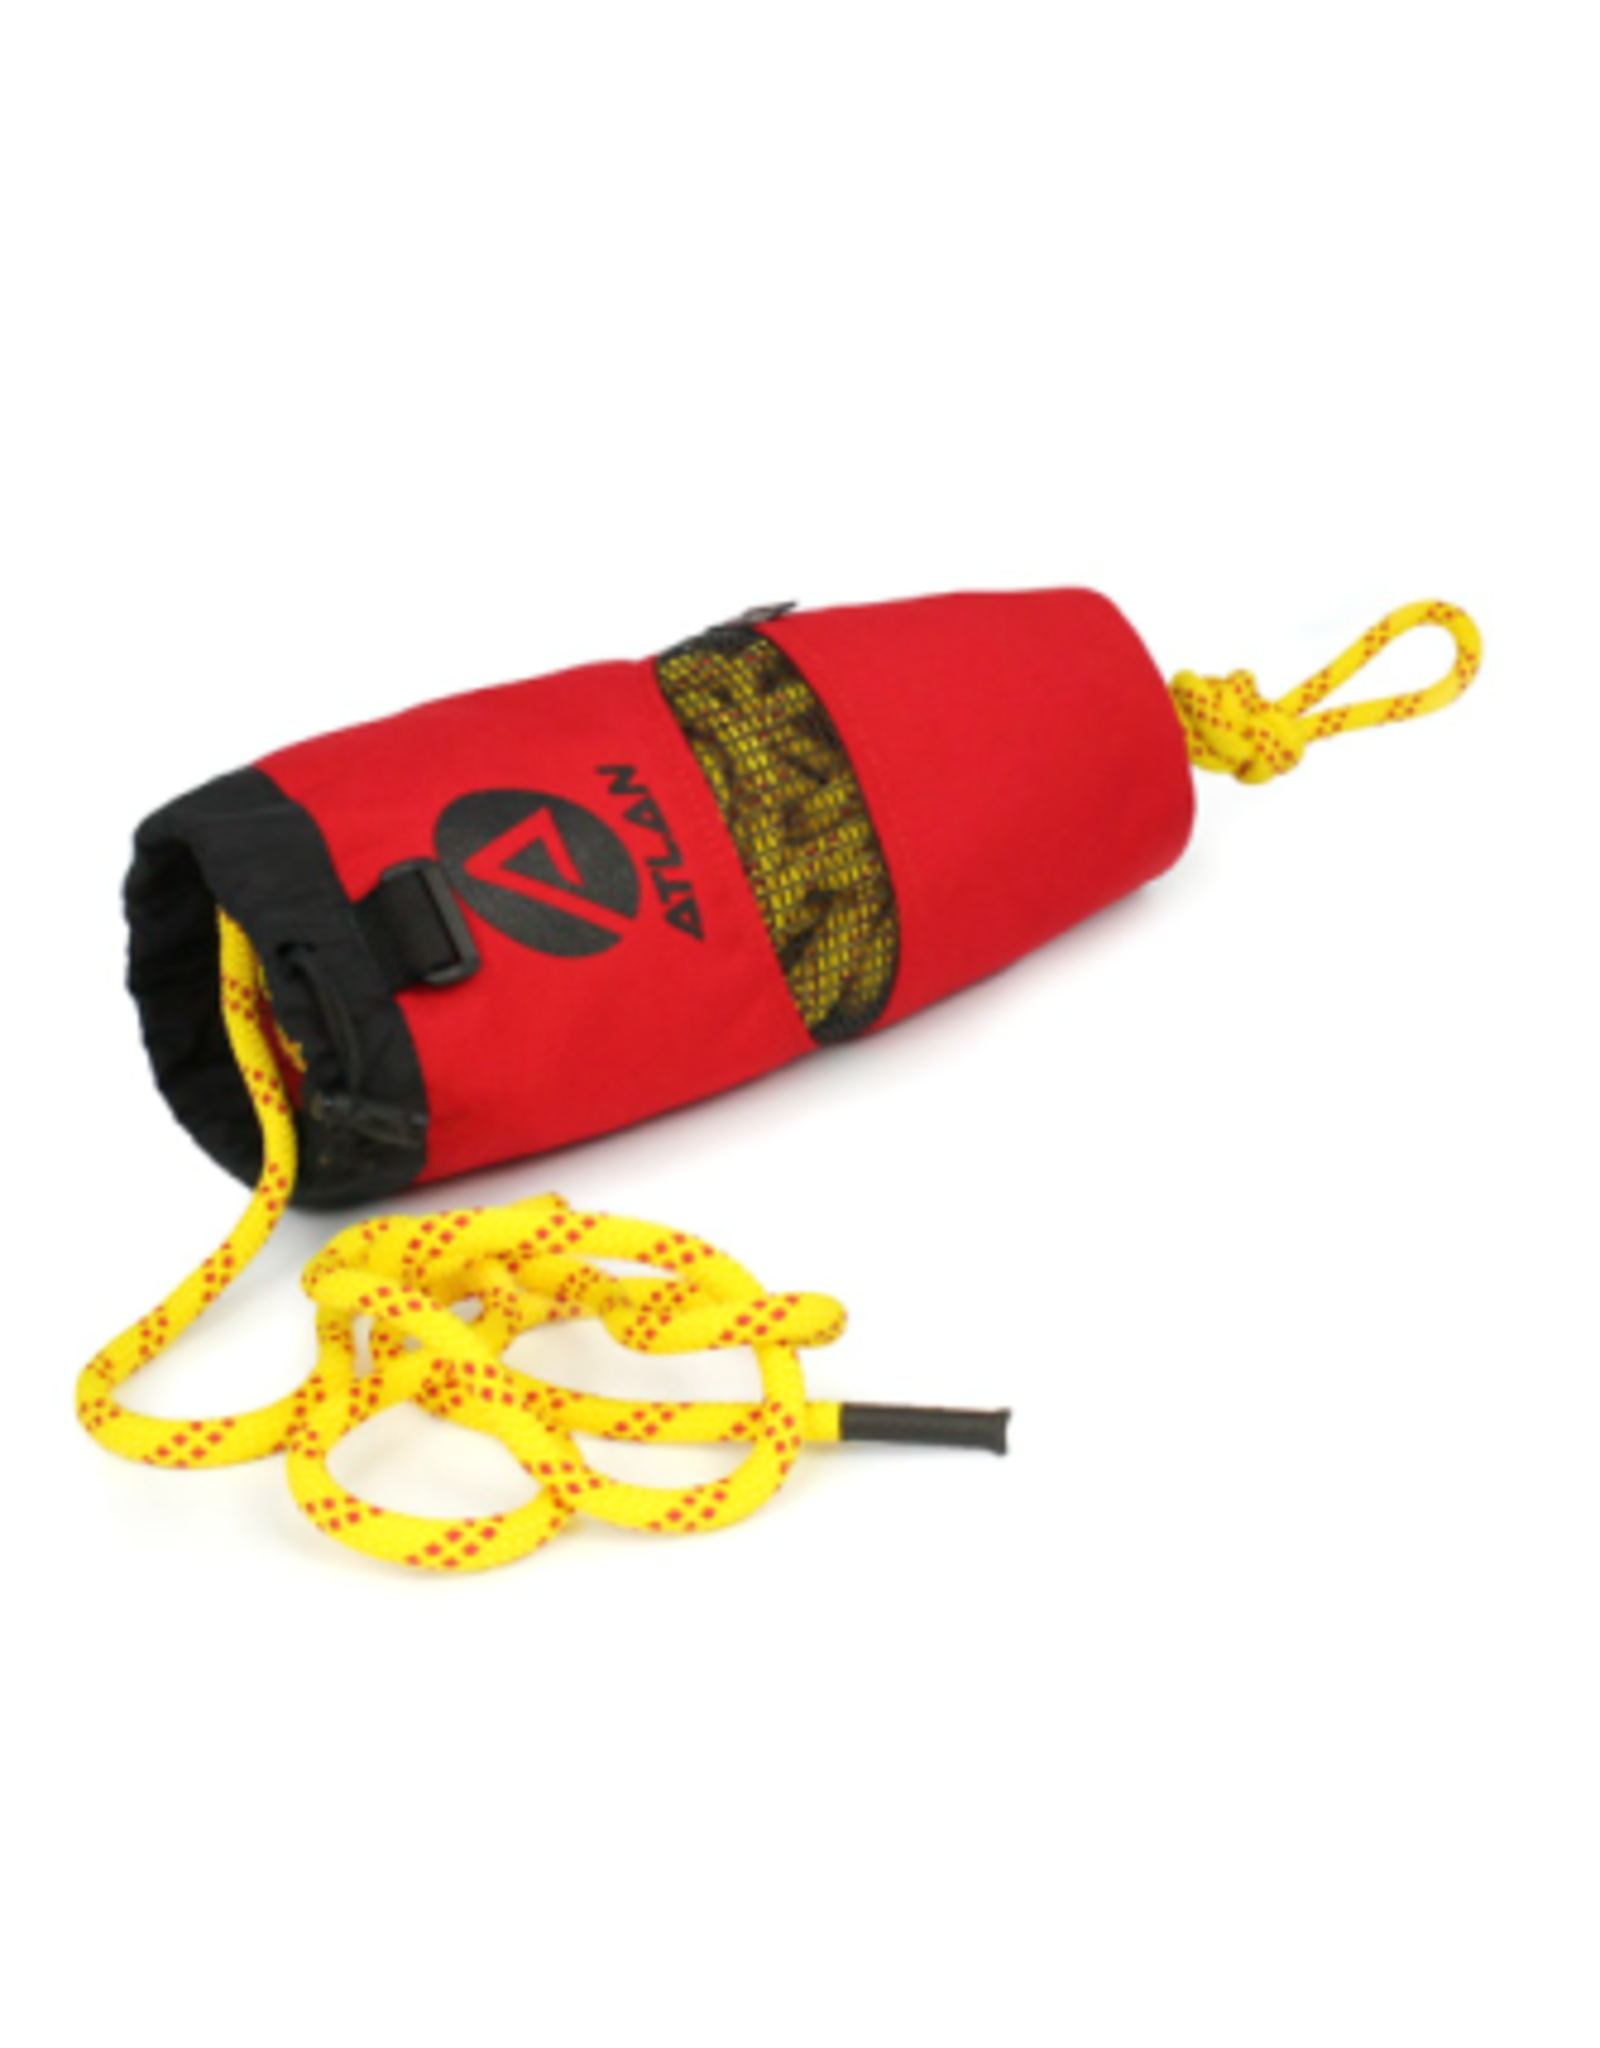 Atlan Ergo throw bag, 70 ft of 7.9 mm rope Kermantle braiding